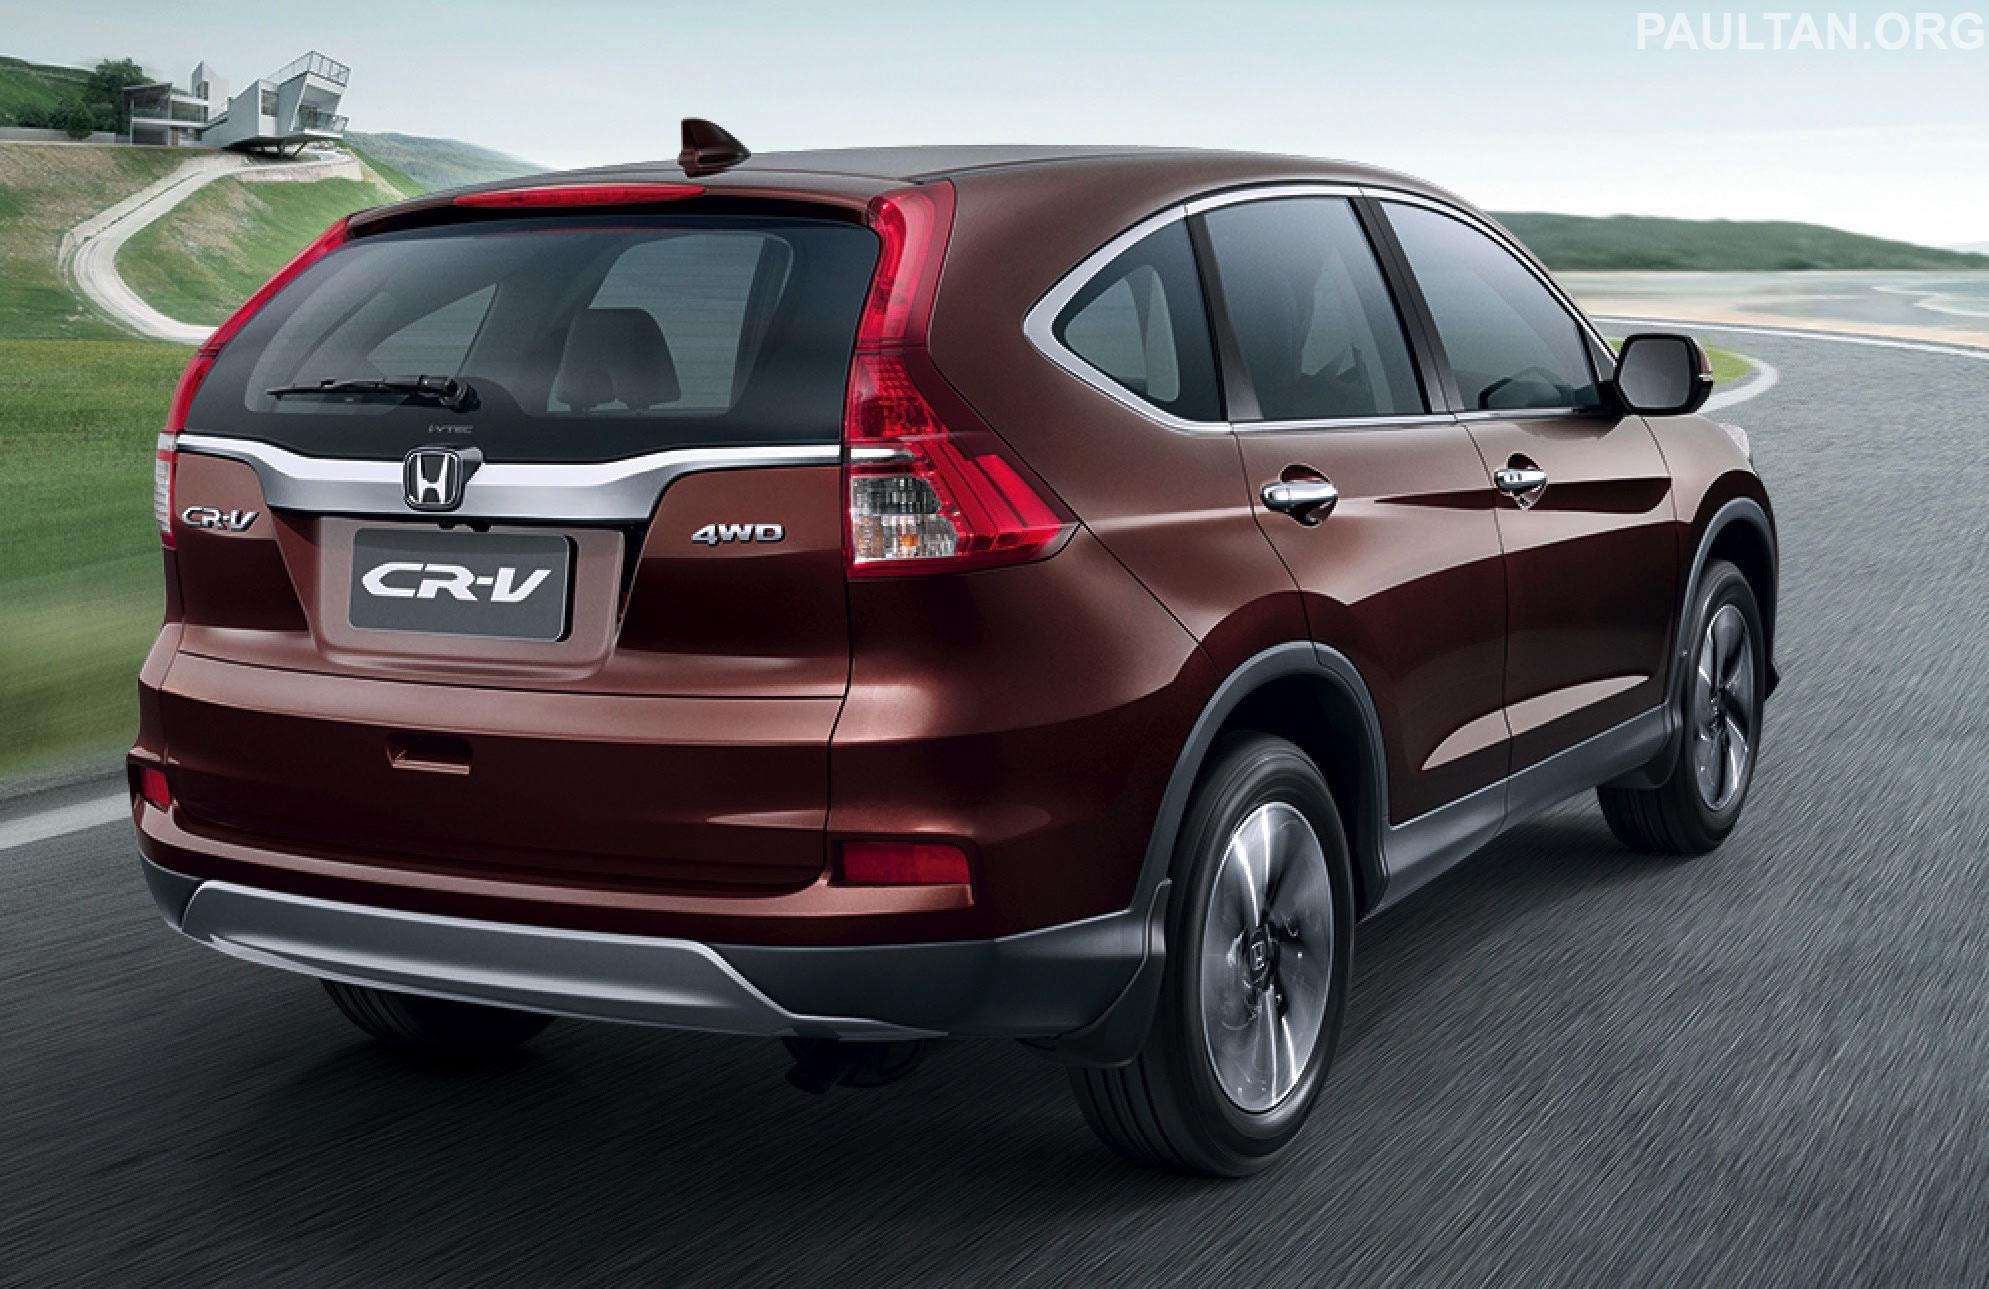 Honda CRV ou HRV - Qual é o melhor para Comprar?